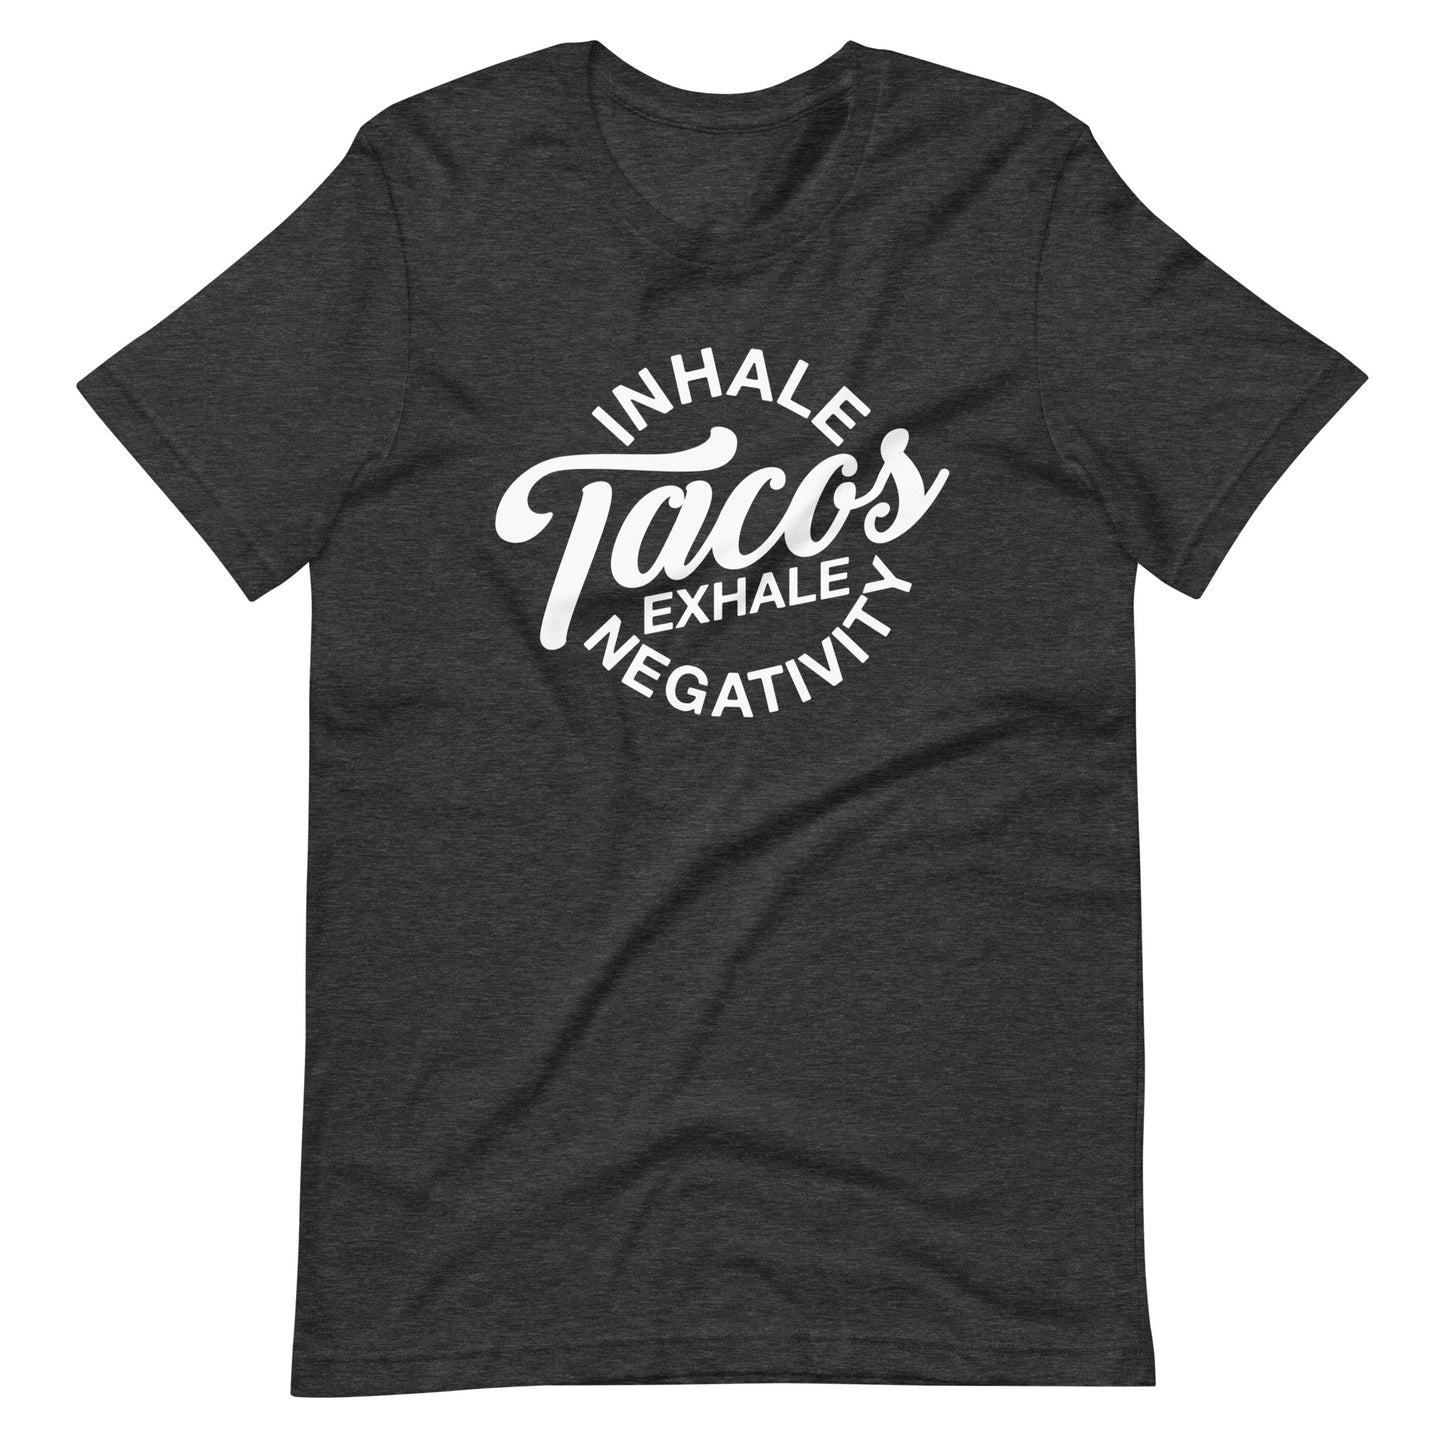 Inhale Tacos Exhale Negativity Unisex t-shirt